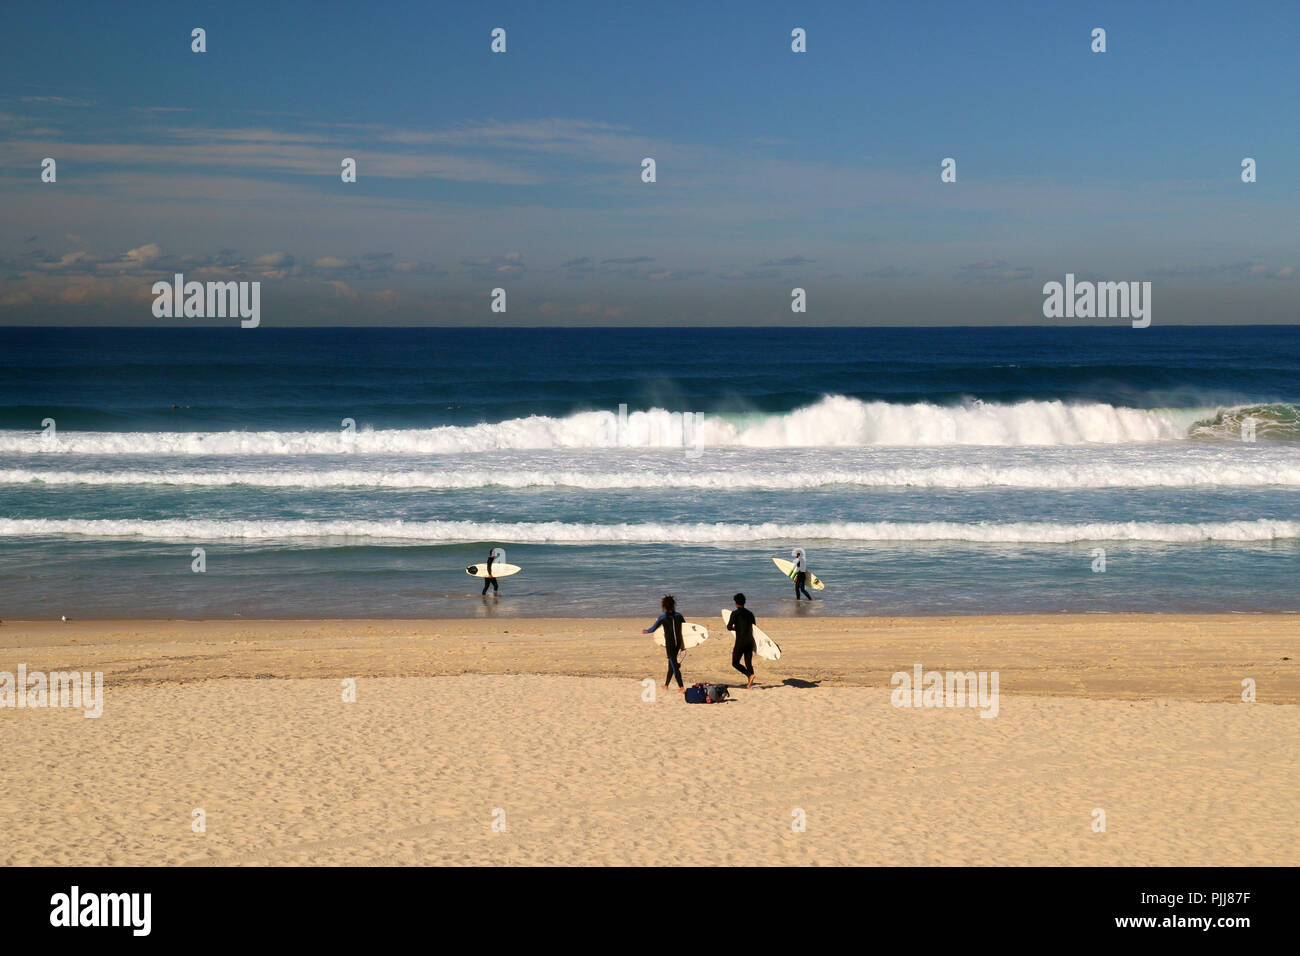 Bleu profond de l'océan Pacifique sur la plage avec des vagues énormes et des surfeurs la marche sur la plage et le surf, la plage de Bondi à Sydney, Australie Banque D'Images